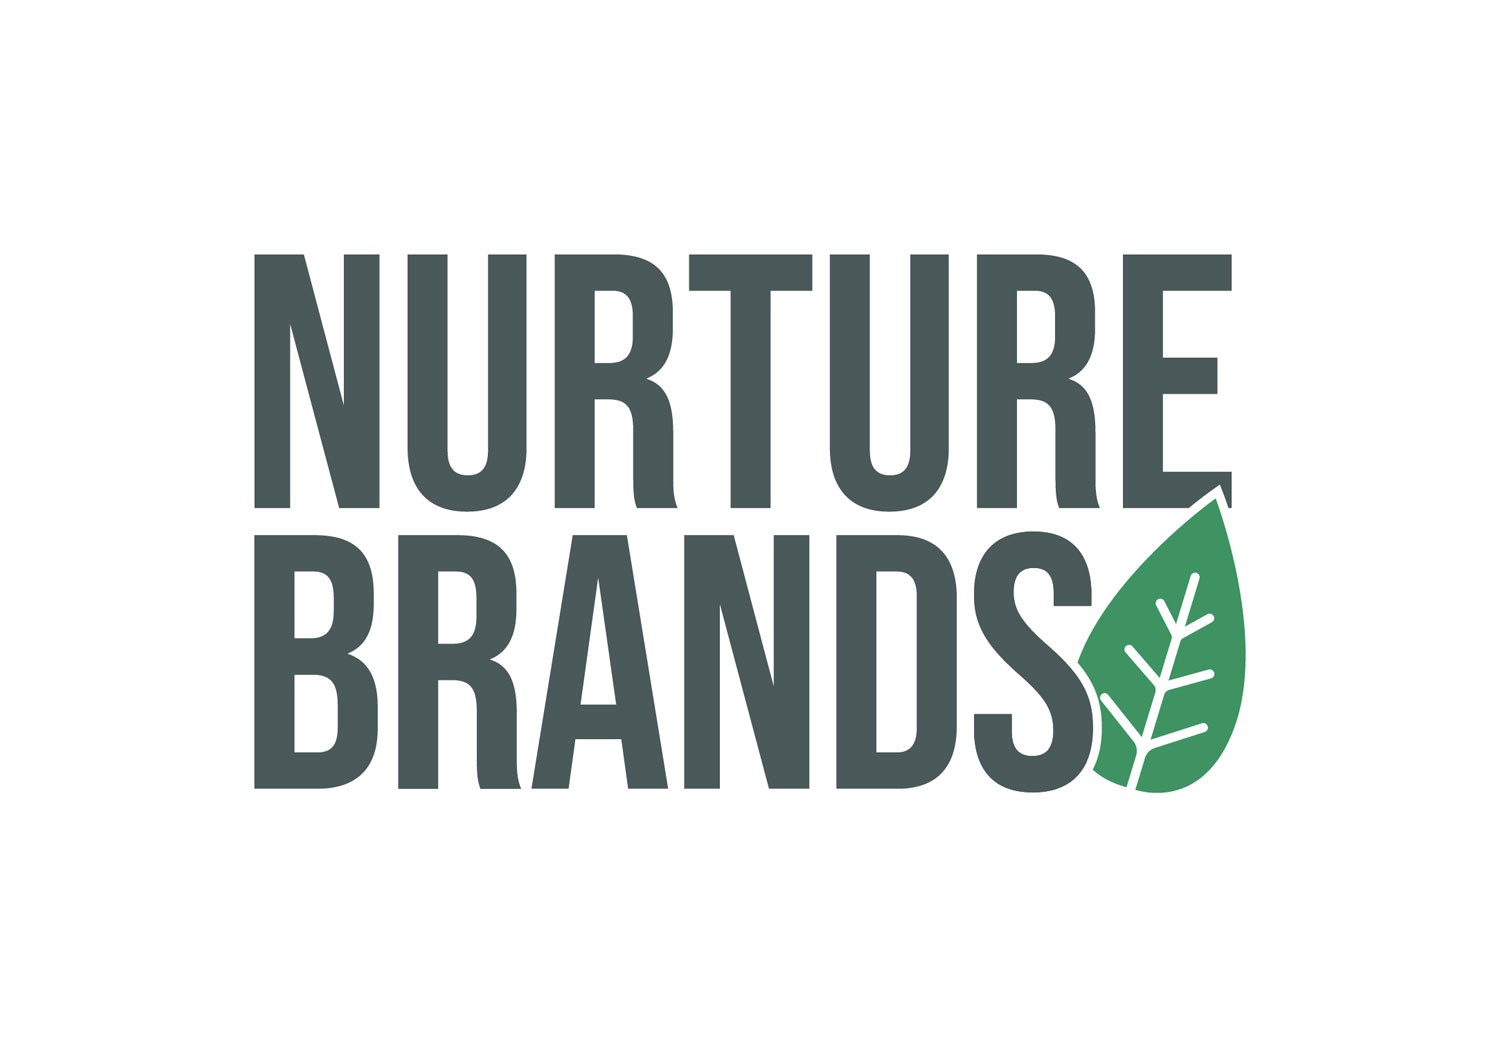 Nurture brands